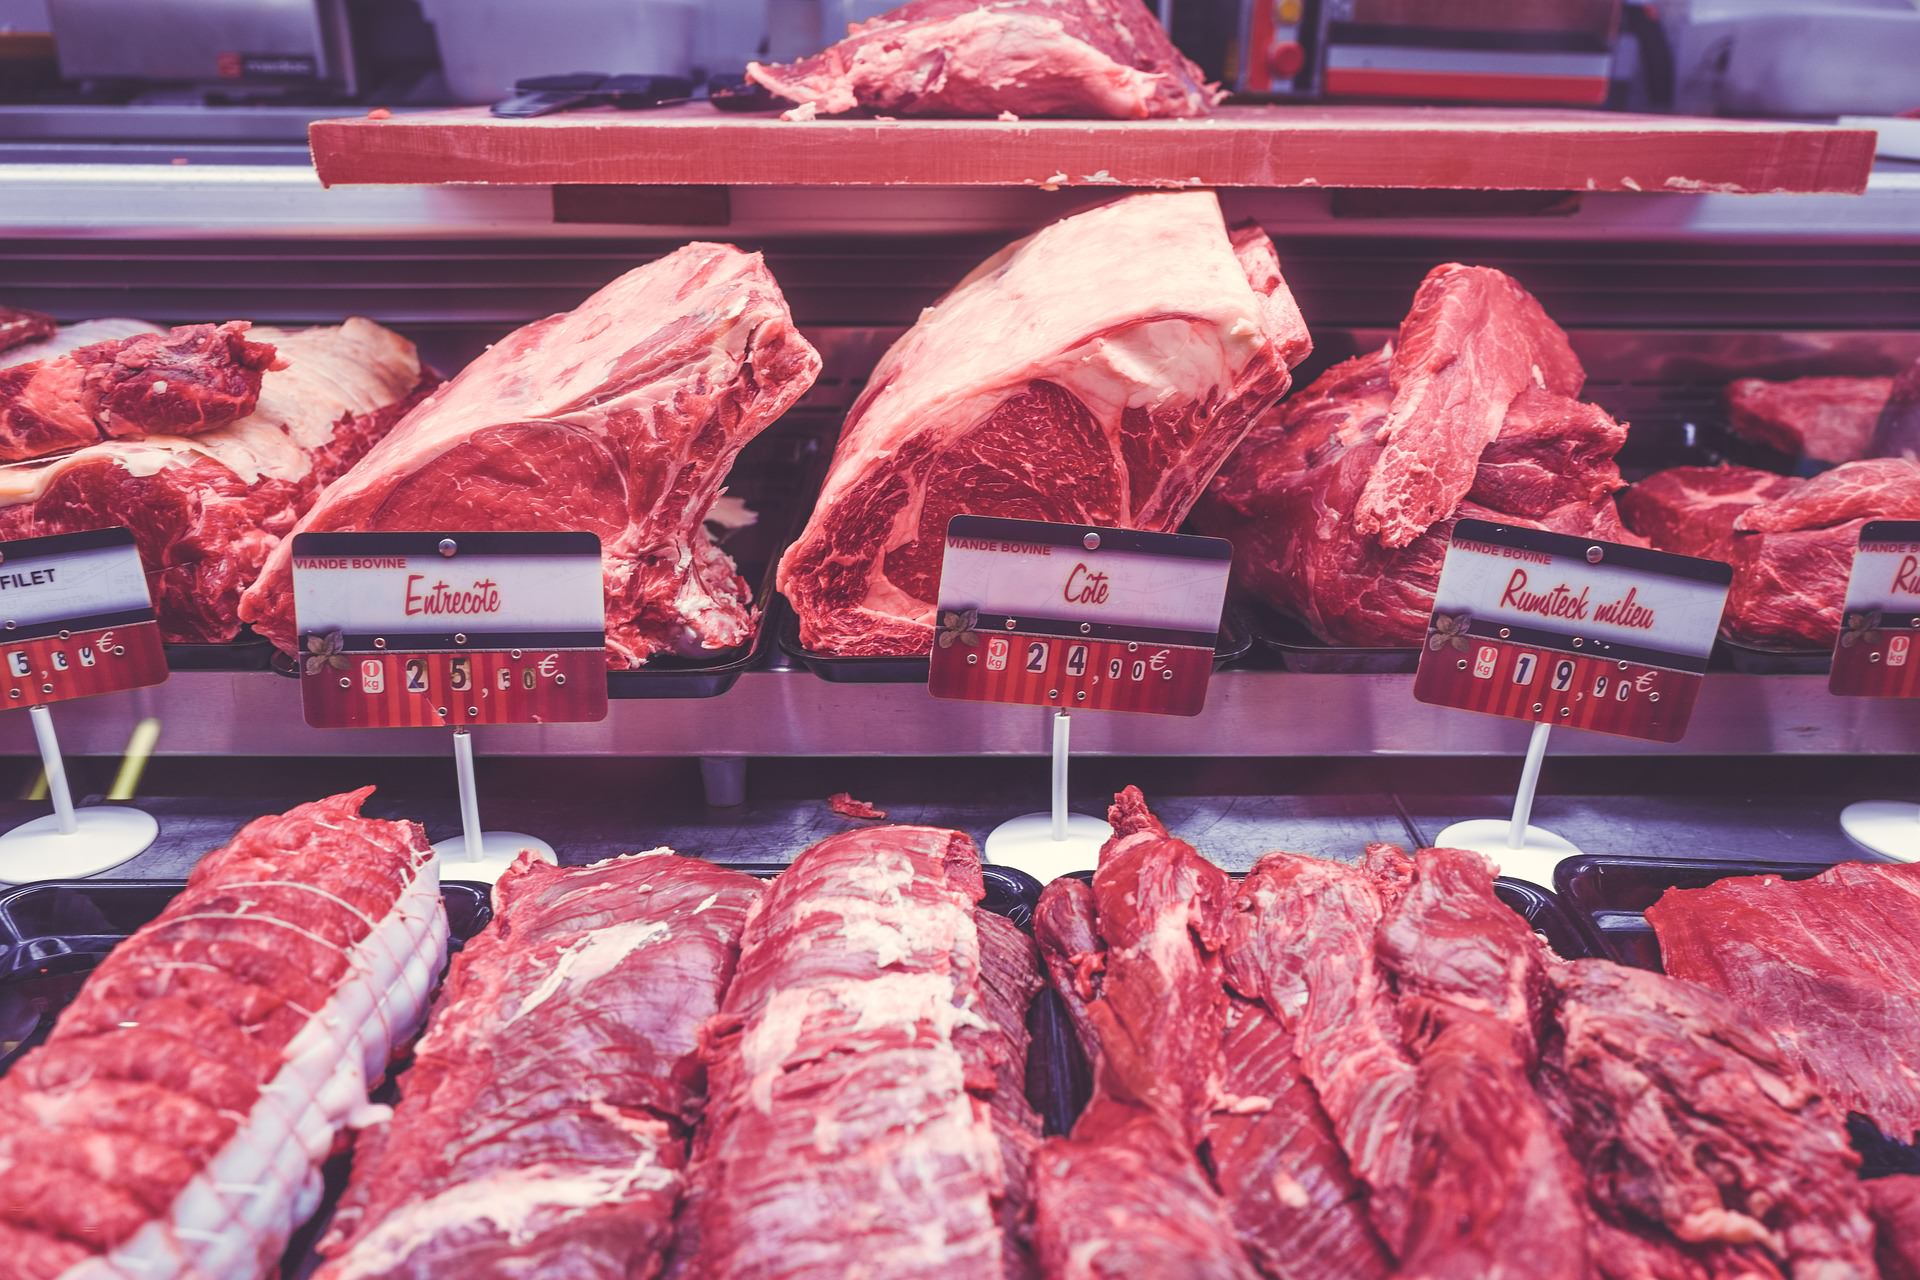 Alta da carne é antecipada e impacto em 2020 é incerto